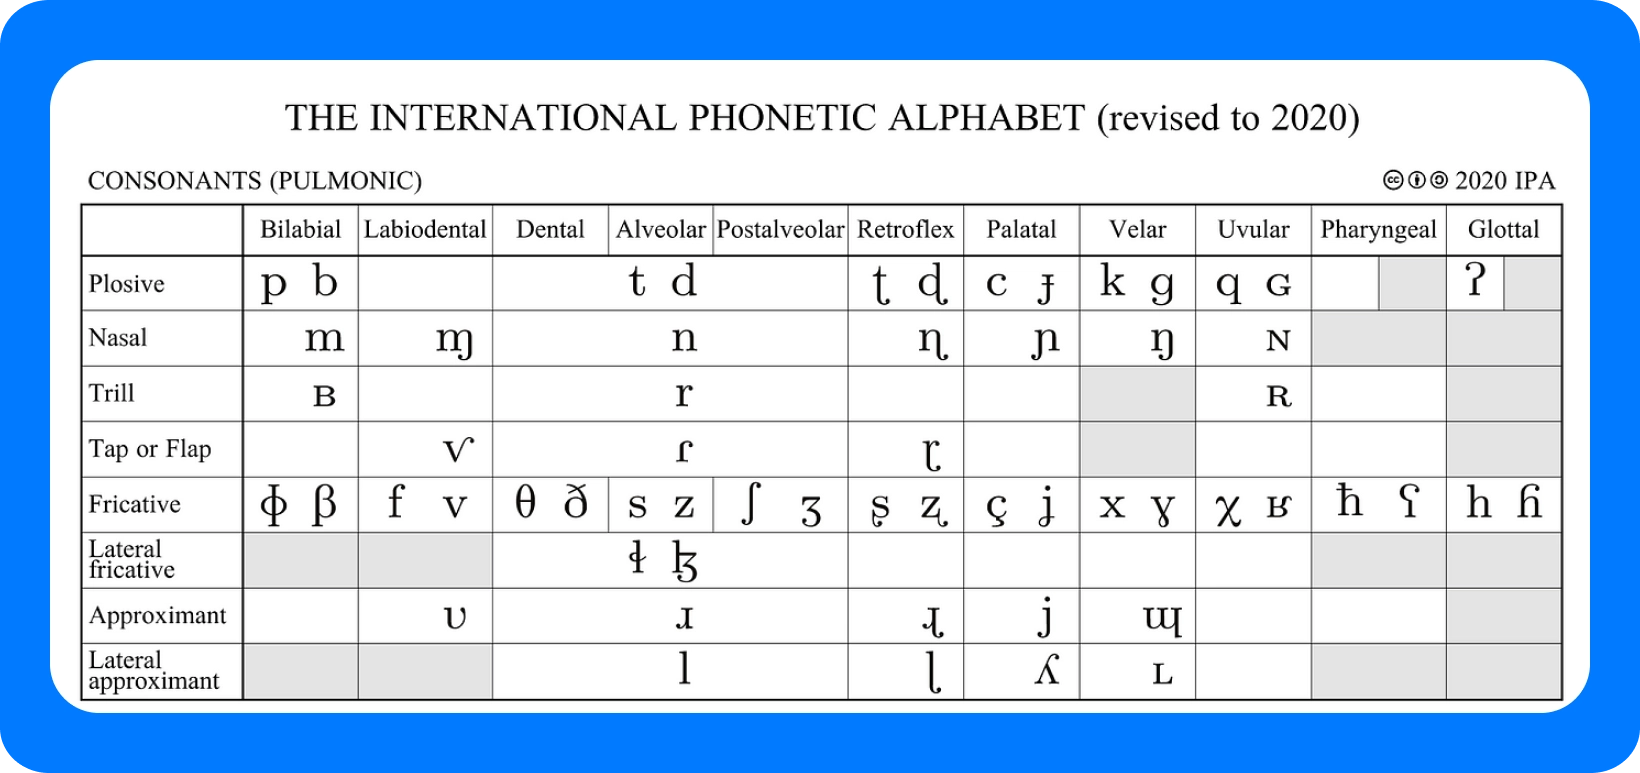 Starptautiskā fonētiskā alfabēta diagramma līdzskaņiem, pārskatīta 2020. gadā, kurā sīki aprakstīti artikulācijas punkti.